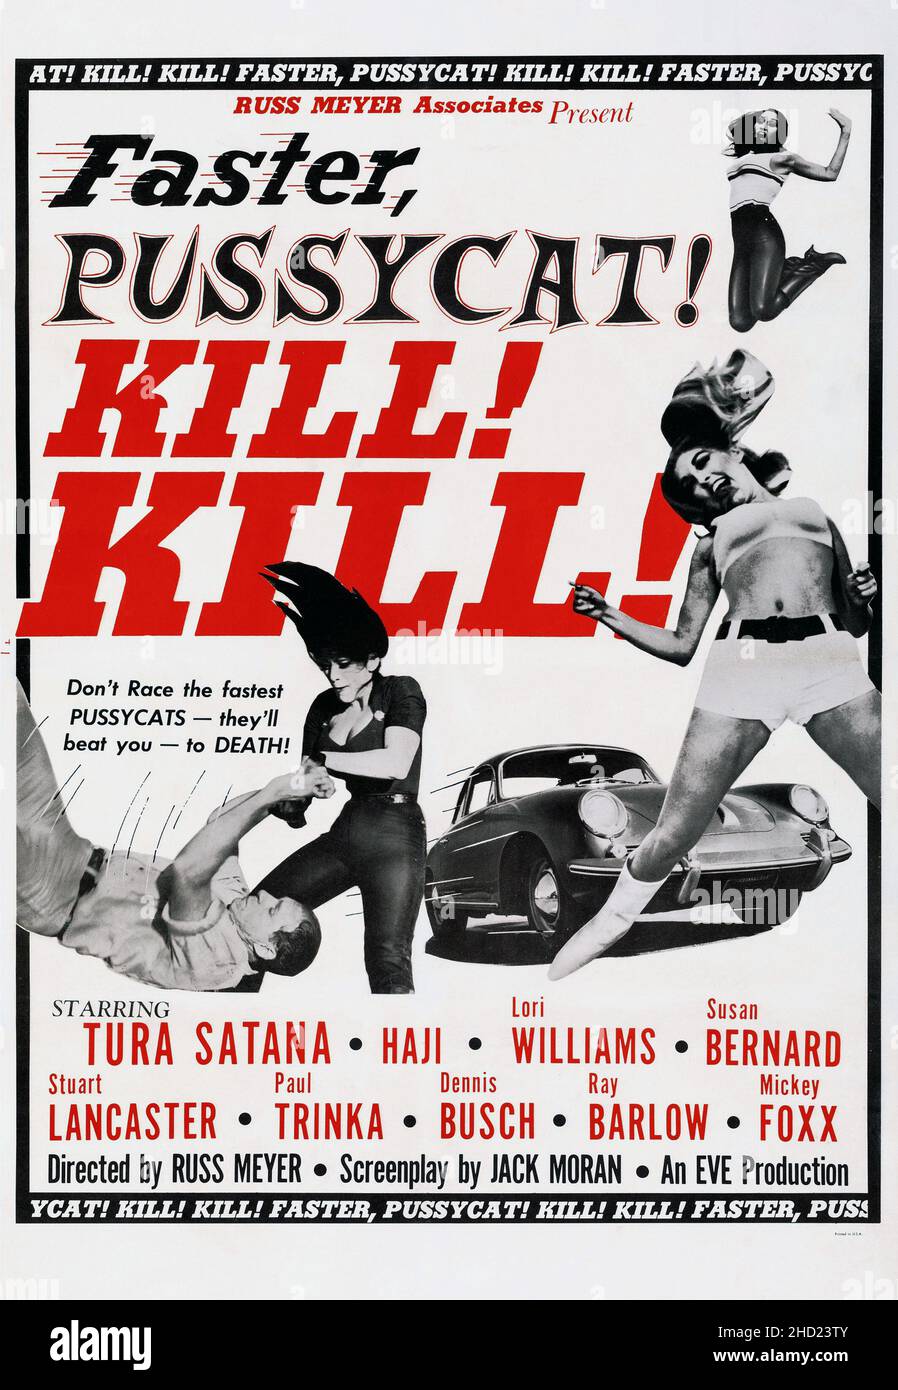 Più veloce, Pussycat! Uccidi! Uccidi! poster di film/film 1965. Protagonisti Tura Satana, Haji, Lori Williams, Susan Bernard. Foto Stock